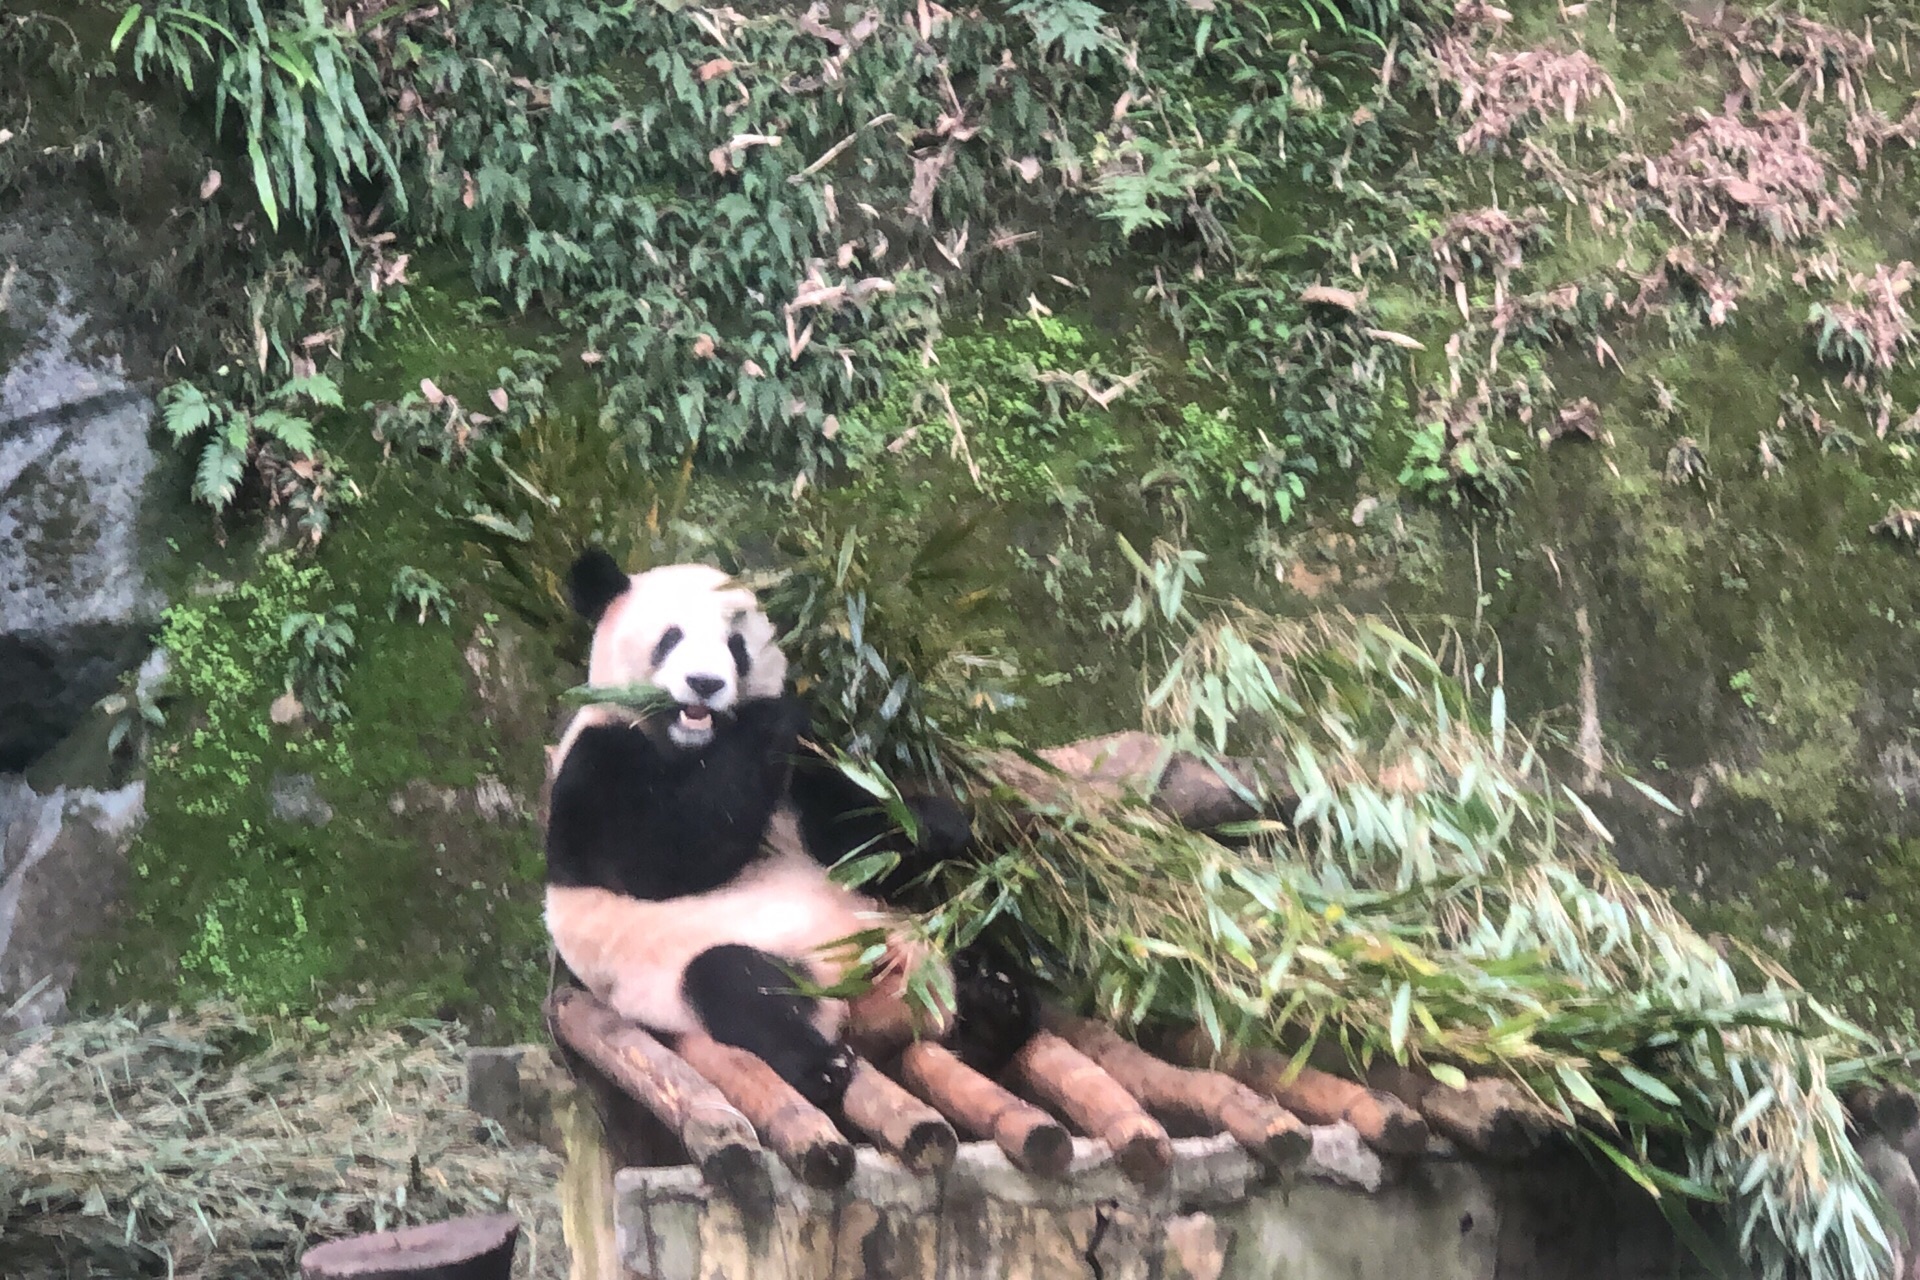 重庆动物园元旦假期迎客流高峰 大熊猫最受游客欢迎